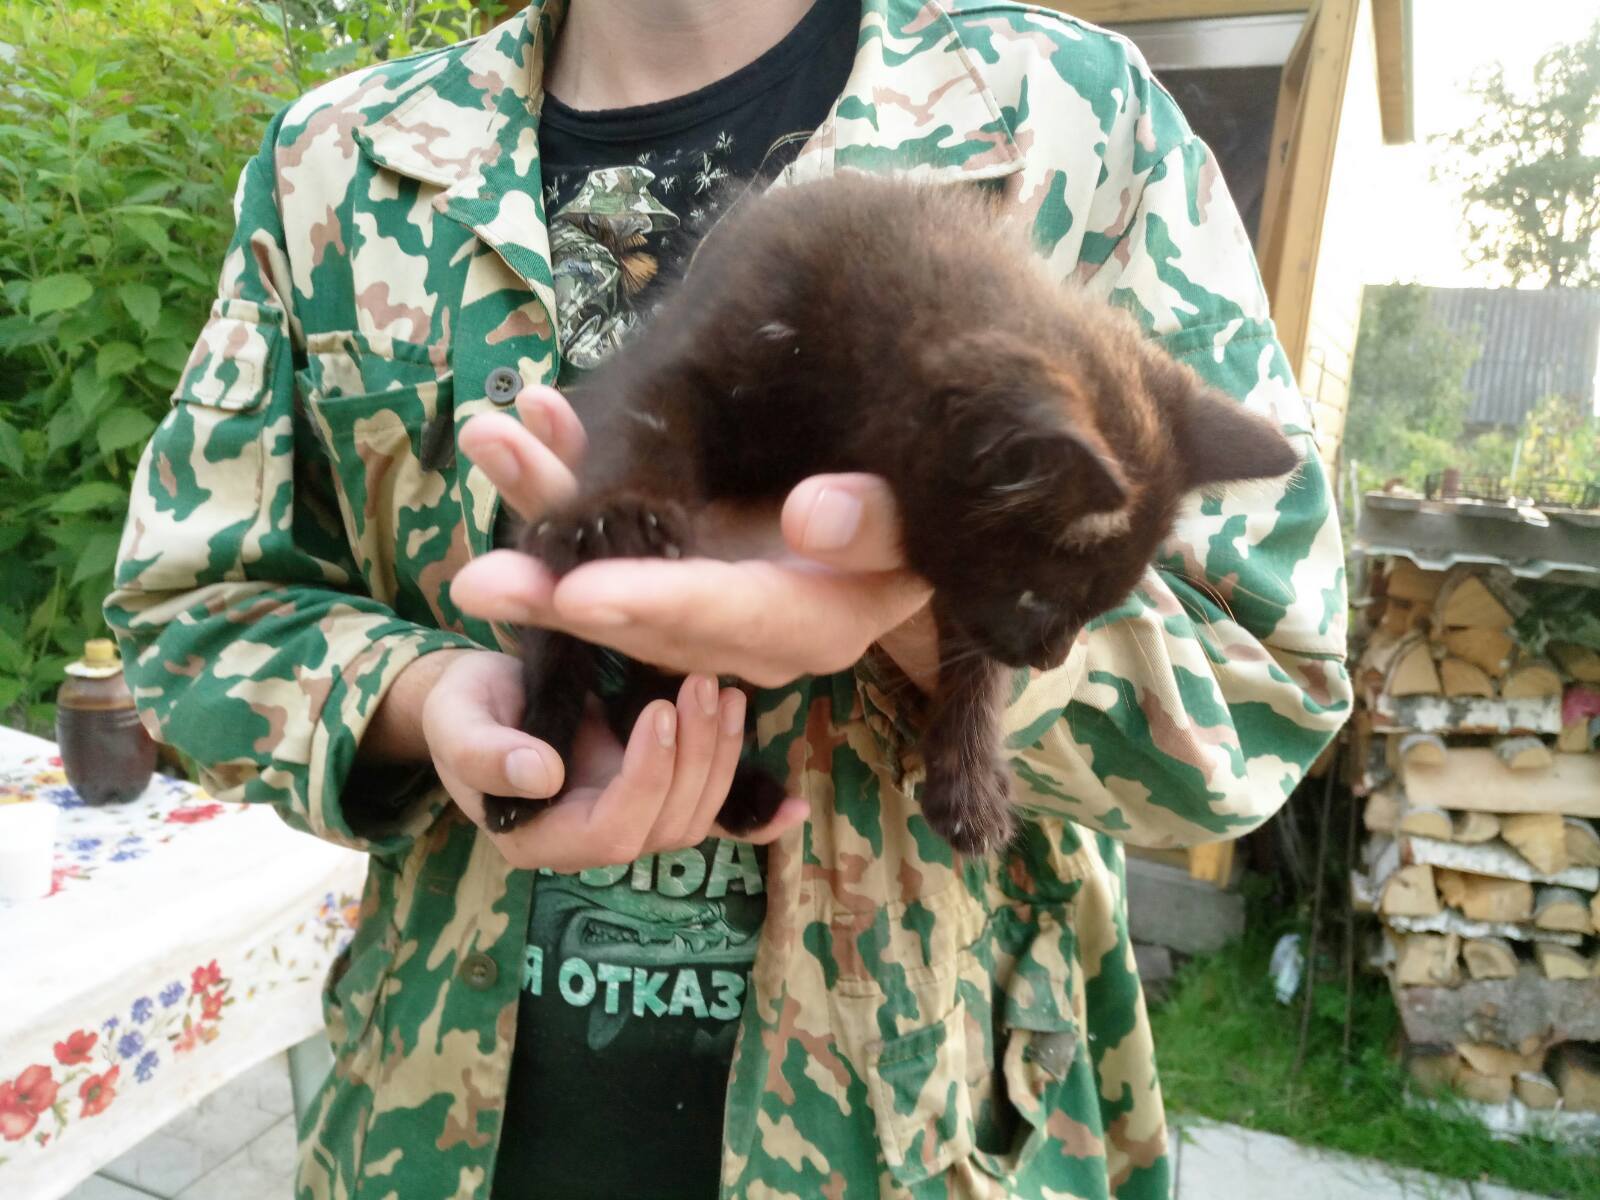 The kitten is in good hands! - My, In good hands, Shelter, Help, Wedge, Zelenograd, Longpost, cat